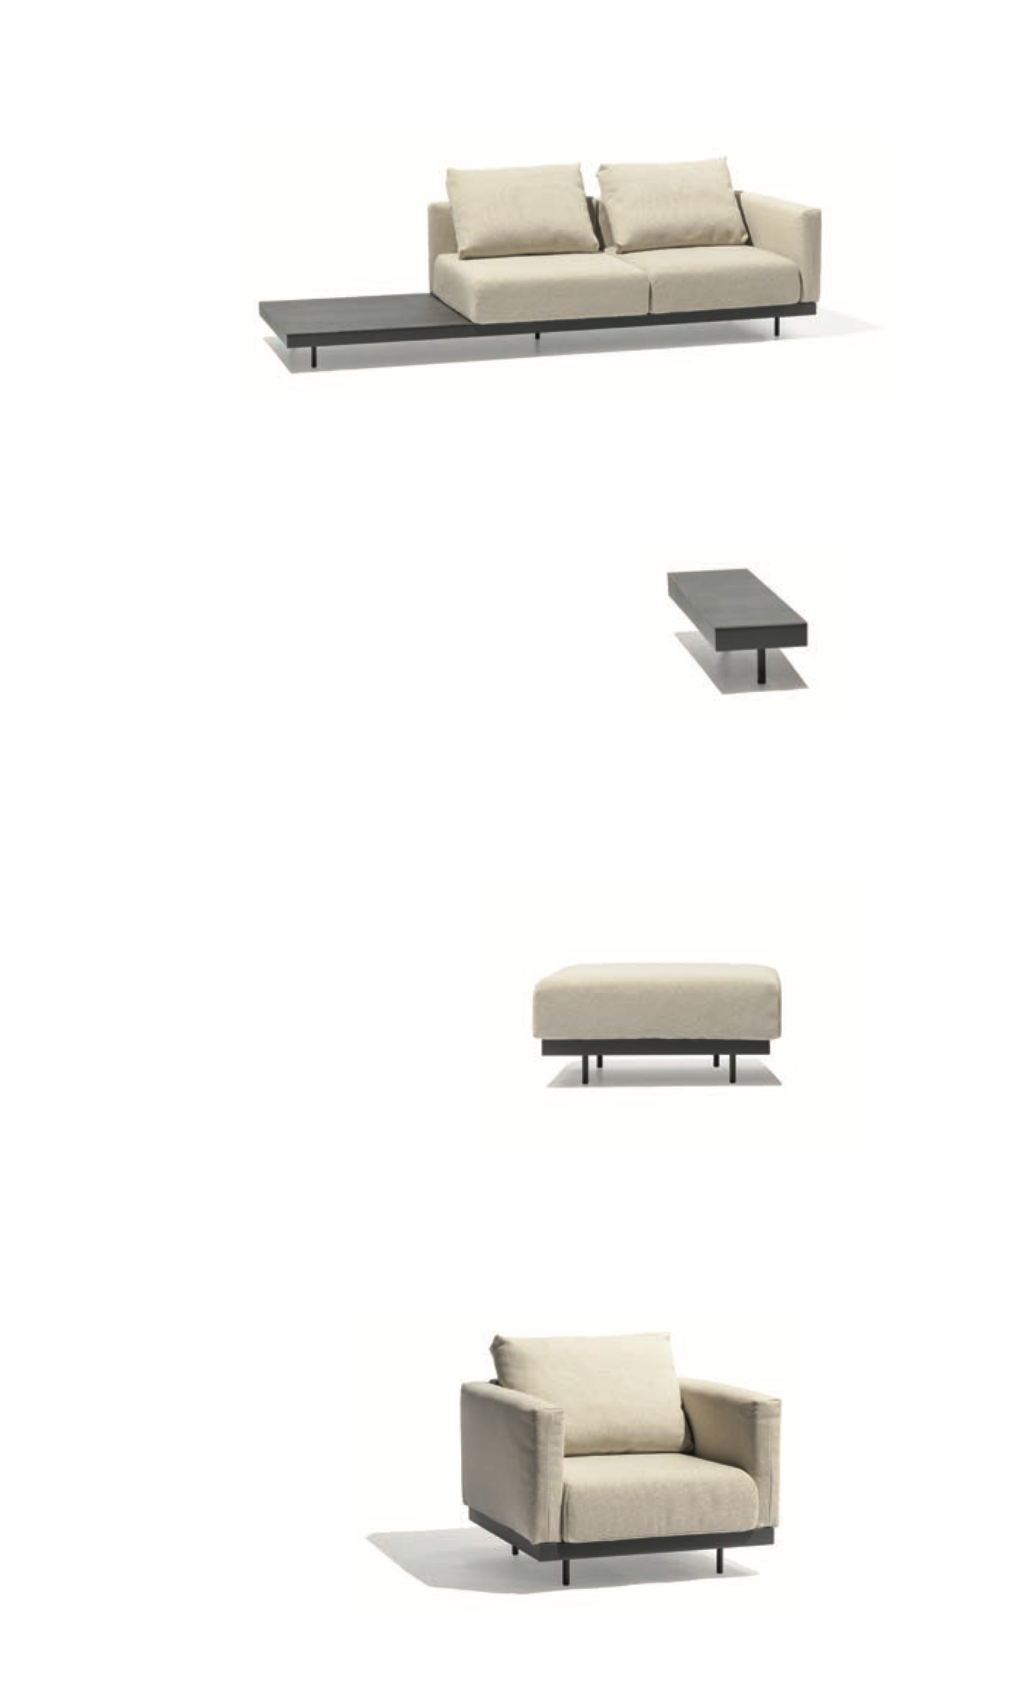 Canapé lounge modulable Todus Dongo en forme de U avec table 363/272 cm